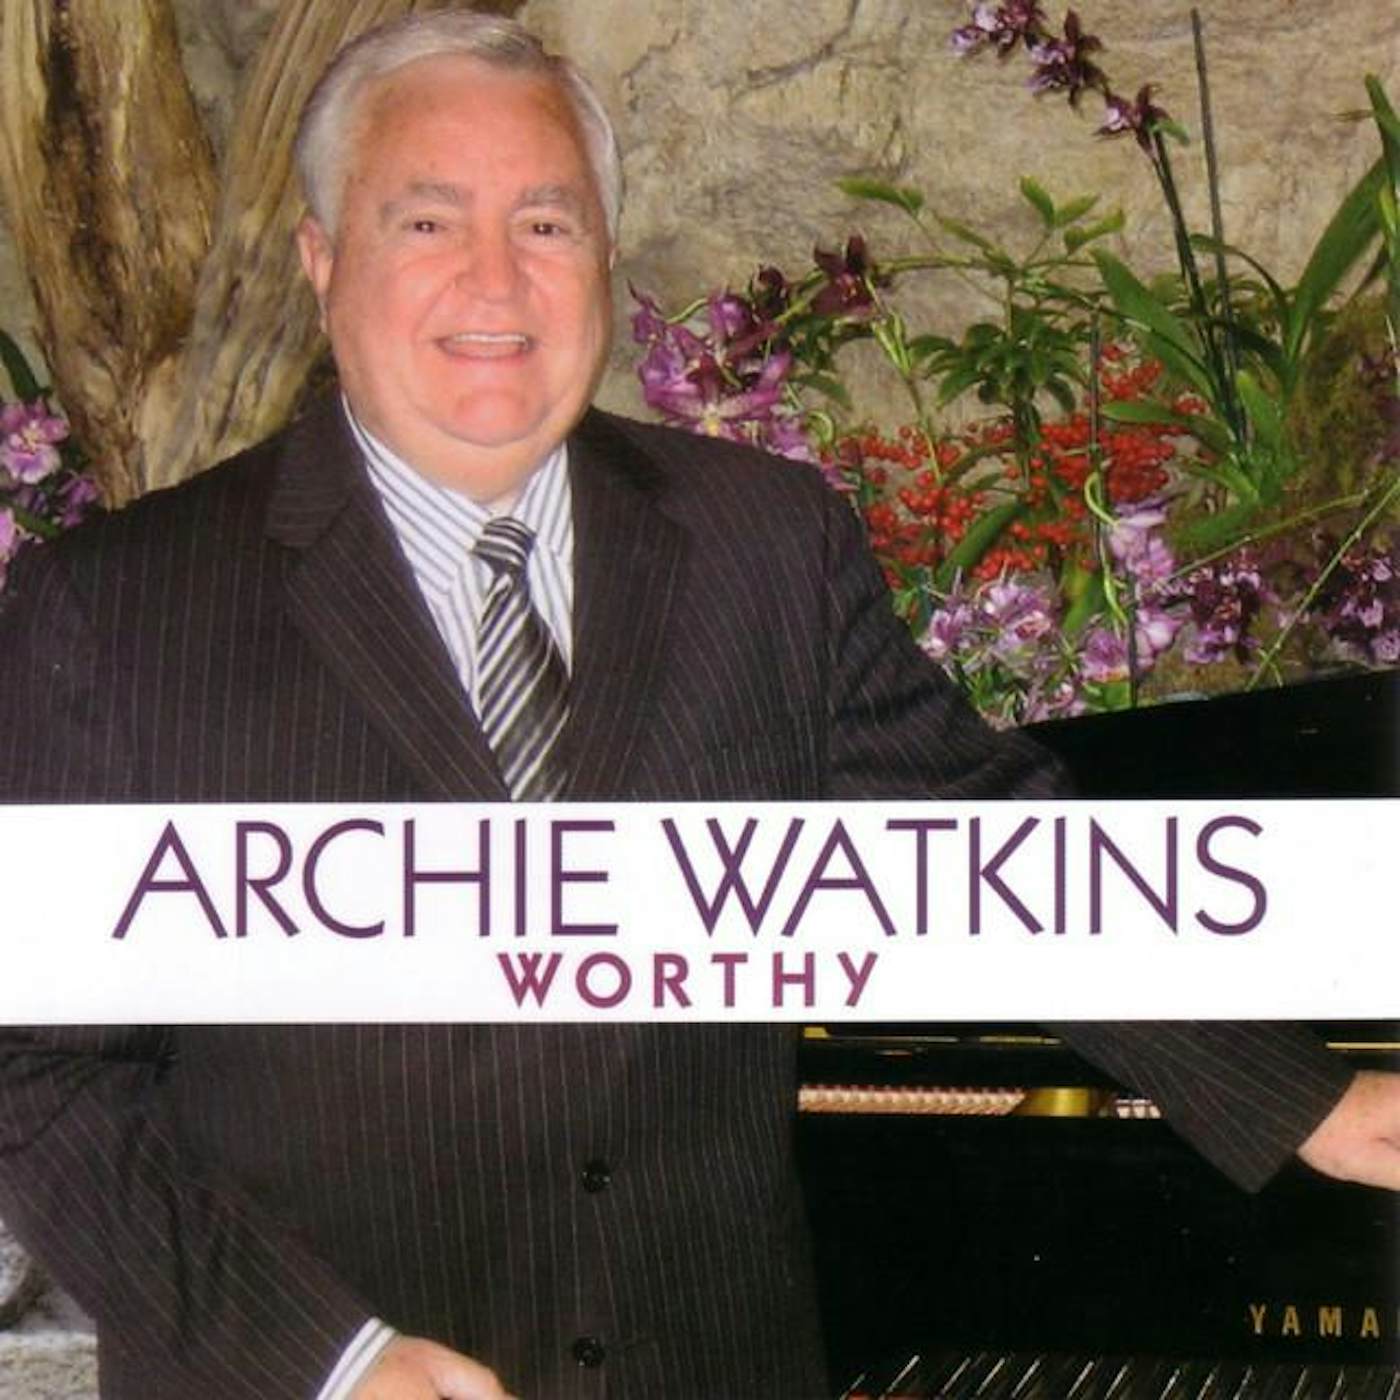 Archie Watkins